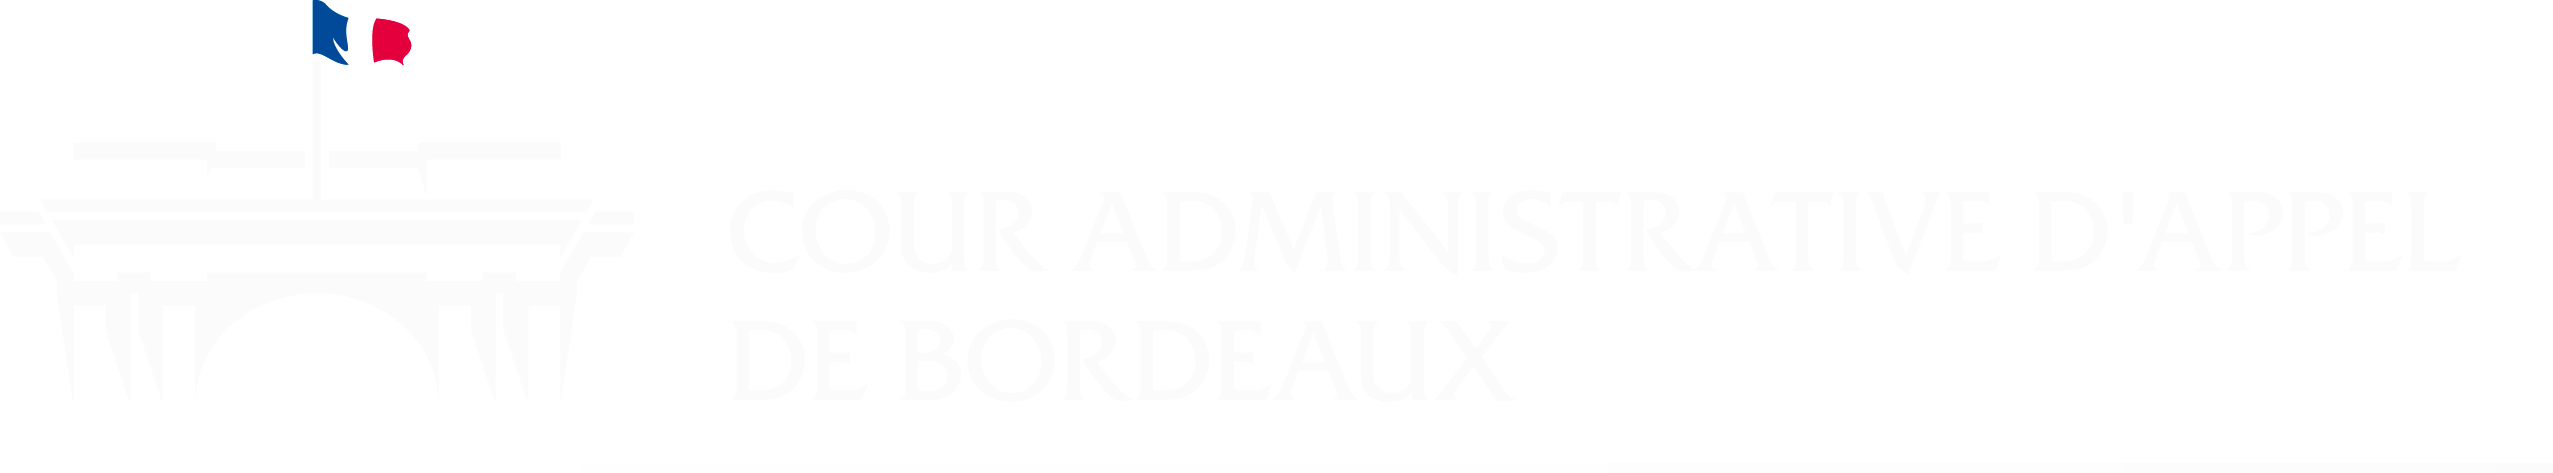 Logo Cour administrative d'appel de Bordeaux